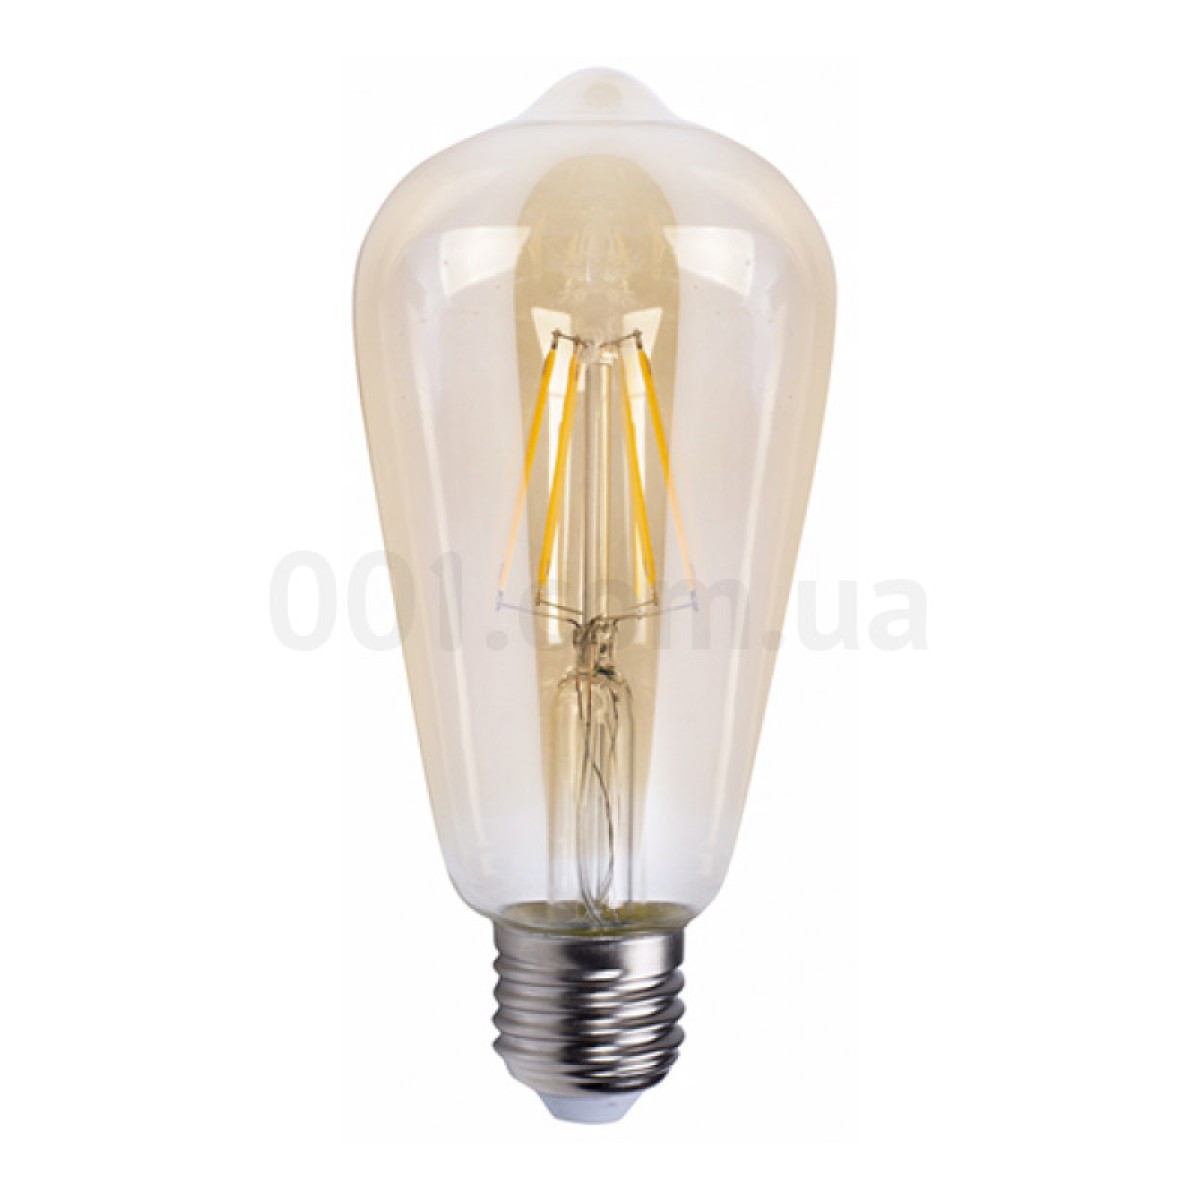 Світлодіодна лампа LB-764 ST64 філамент золото 4Вт 2700K E27, Feron 98_98.jpg